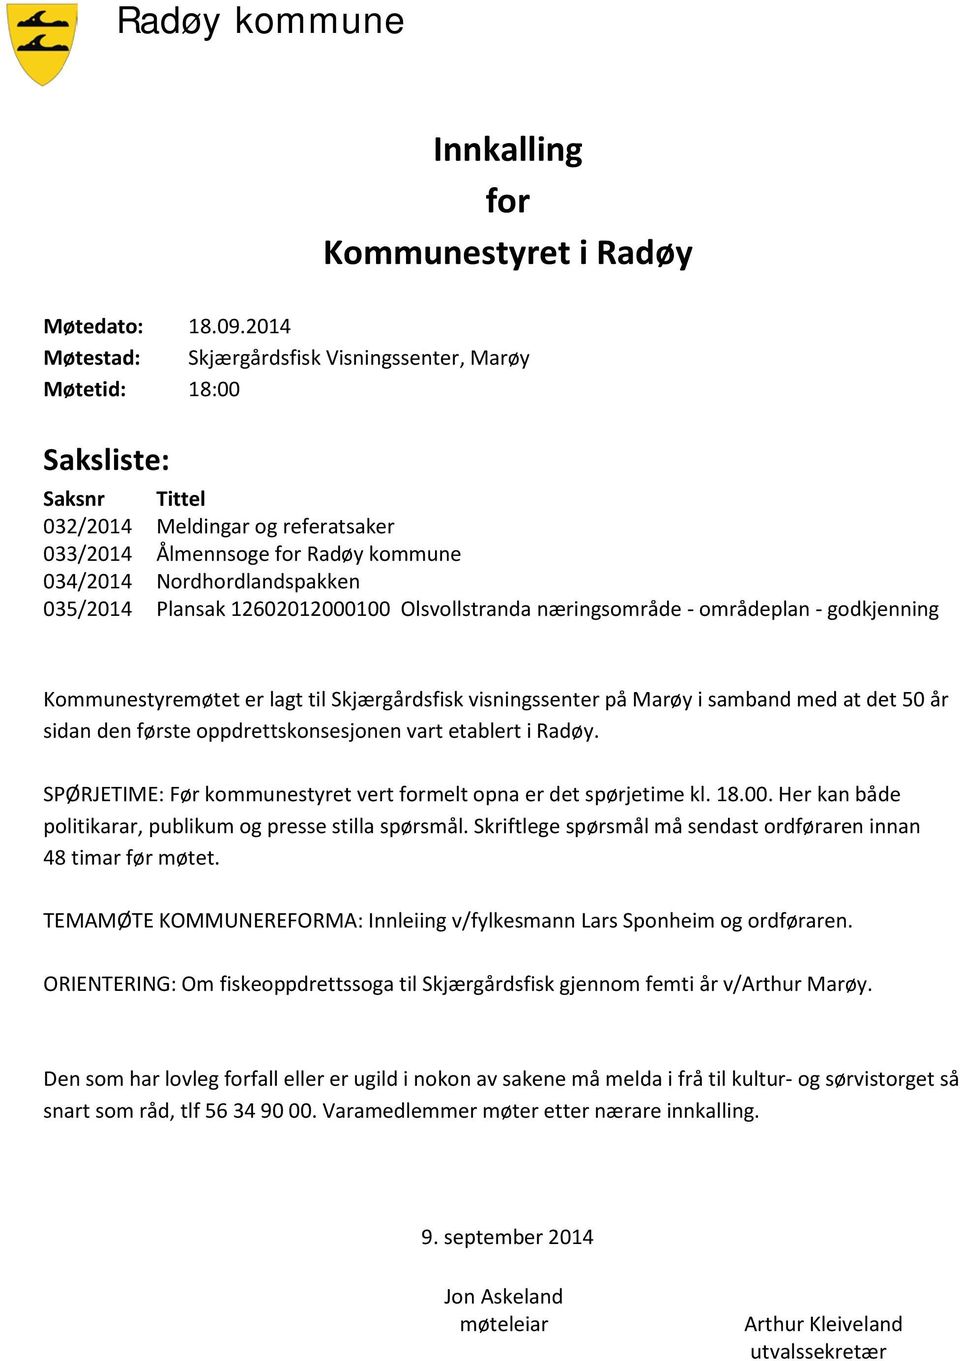 035/2014 Plansak 12602012000100 Olsvollstranda næringsområde - områdeplan - godkjenning Kommunestyremøtet er lagt til Skjærgårdsfisk visningssenter på Marøy i samband med at det 50 år sidan den